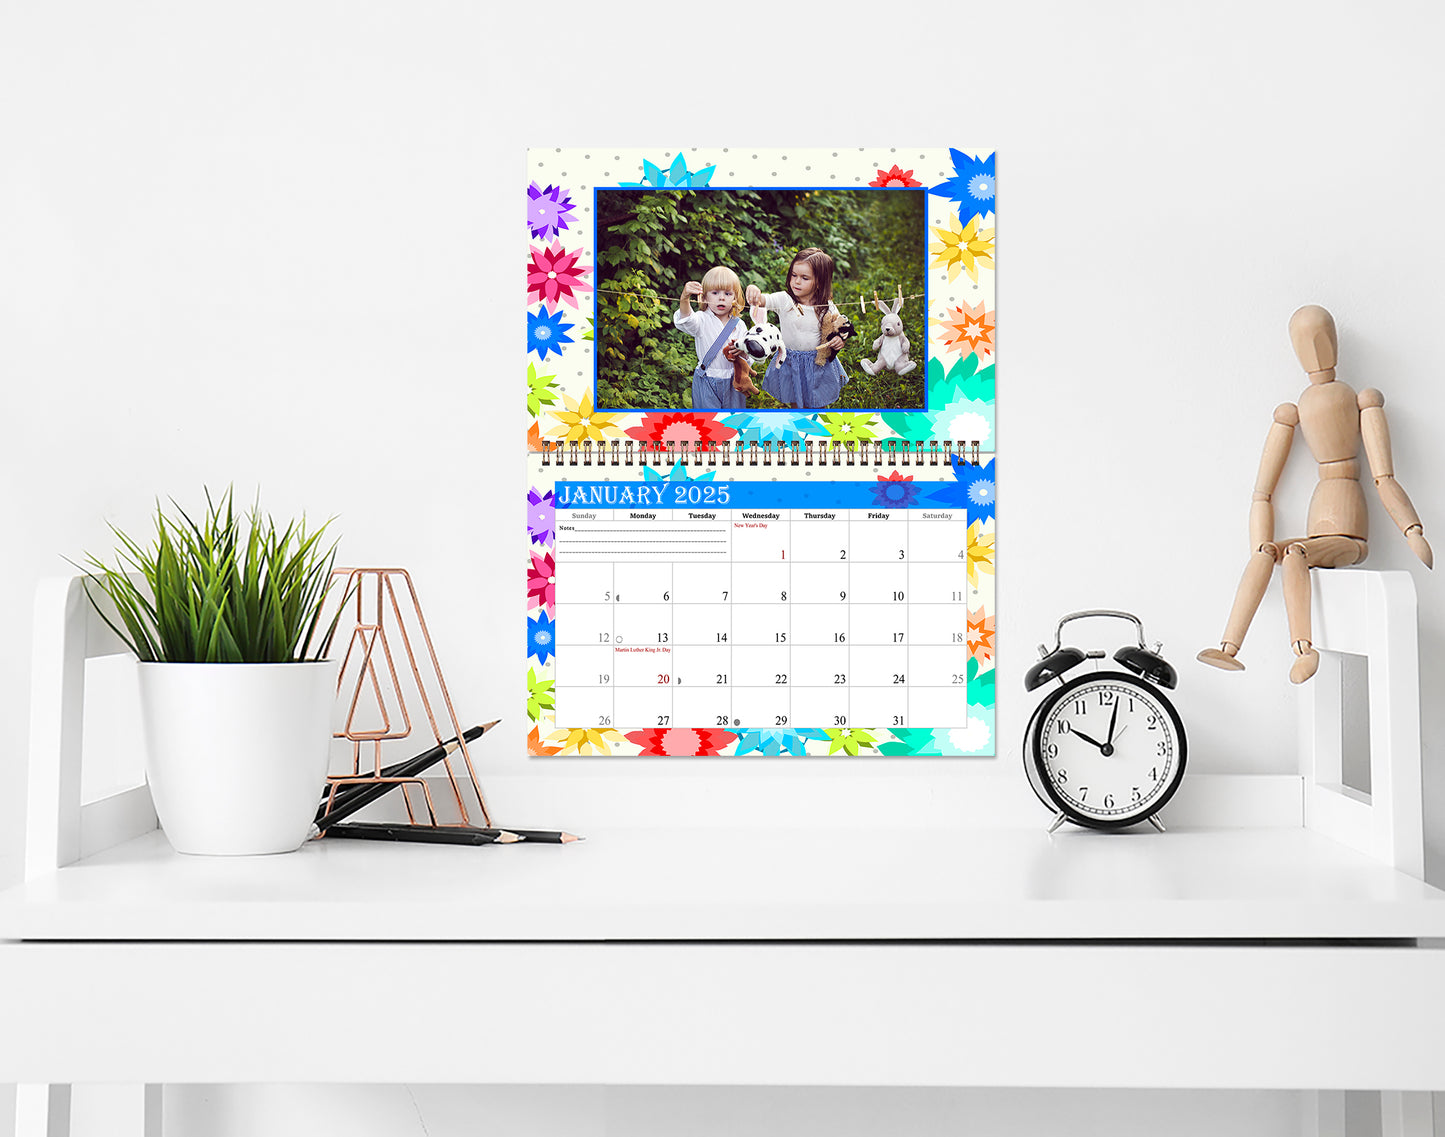 2025 Photo Frame Wall Spiral-Bound Calendar (Add Your Own Photos) - 12 Months Desktop/Wall Calendar/Planner - (Edition #01)